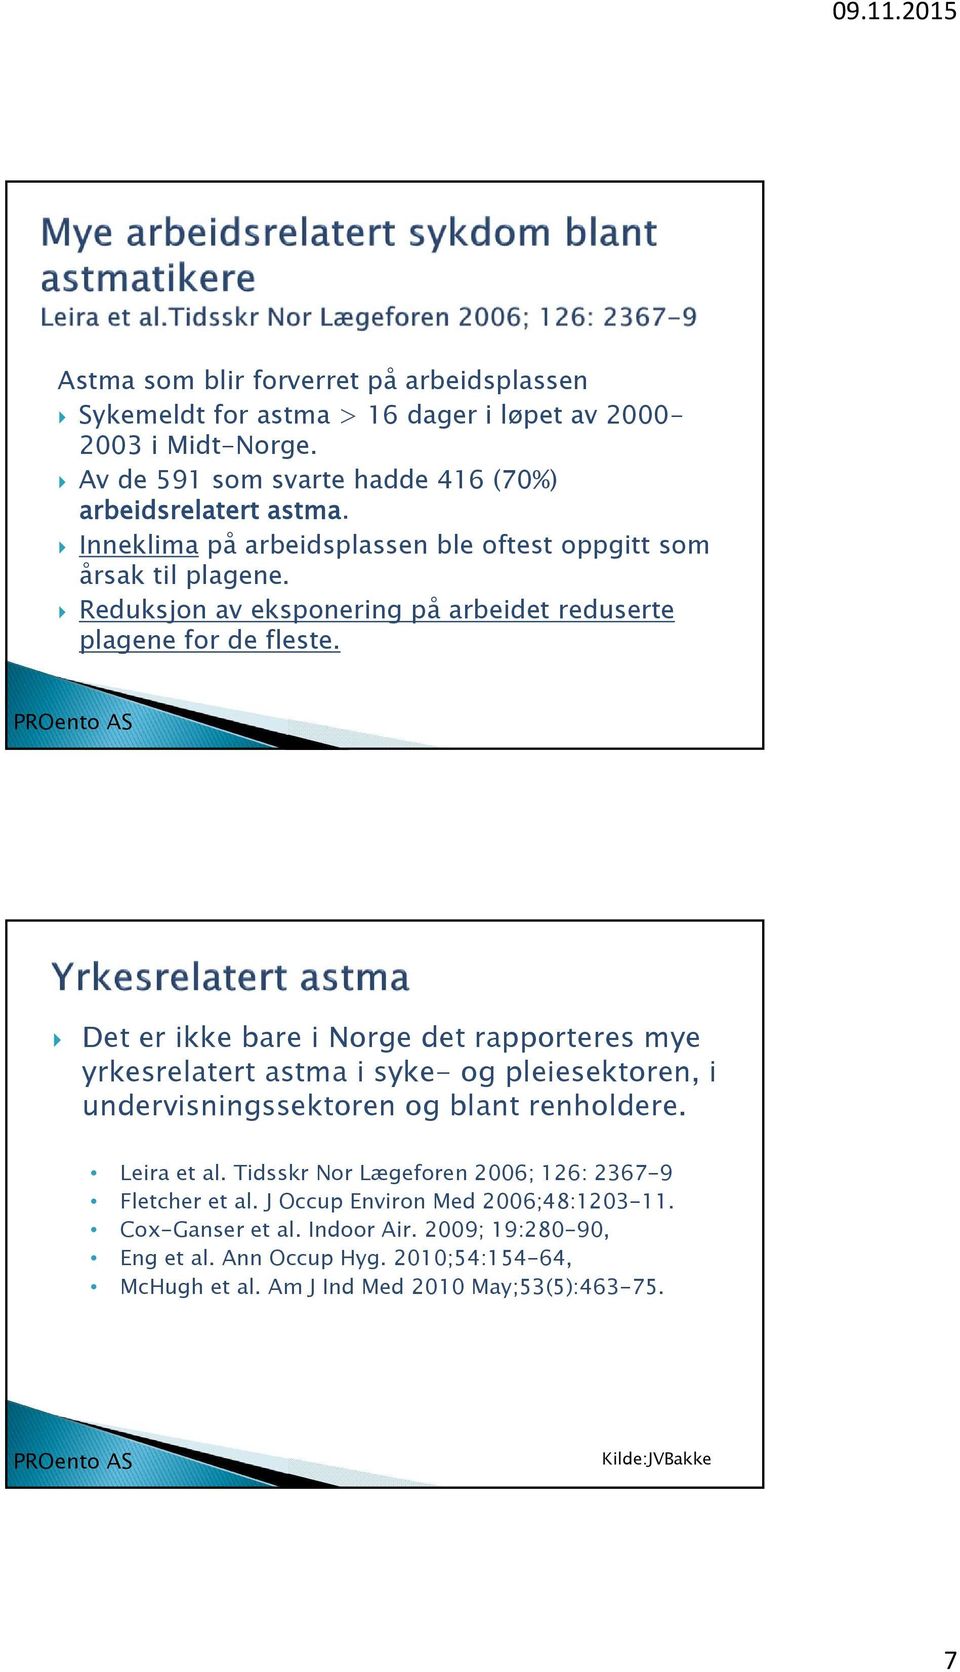 Det er ikke bare i Norge det rapporteres mye yrkesrelatert astma i syke- og pleiesektoren, i undervisningssektoren og blant renholdere. Leira et al.